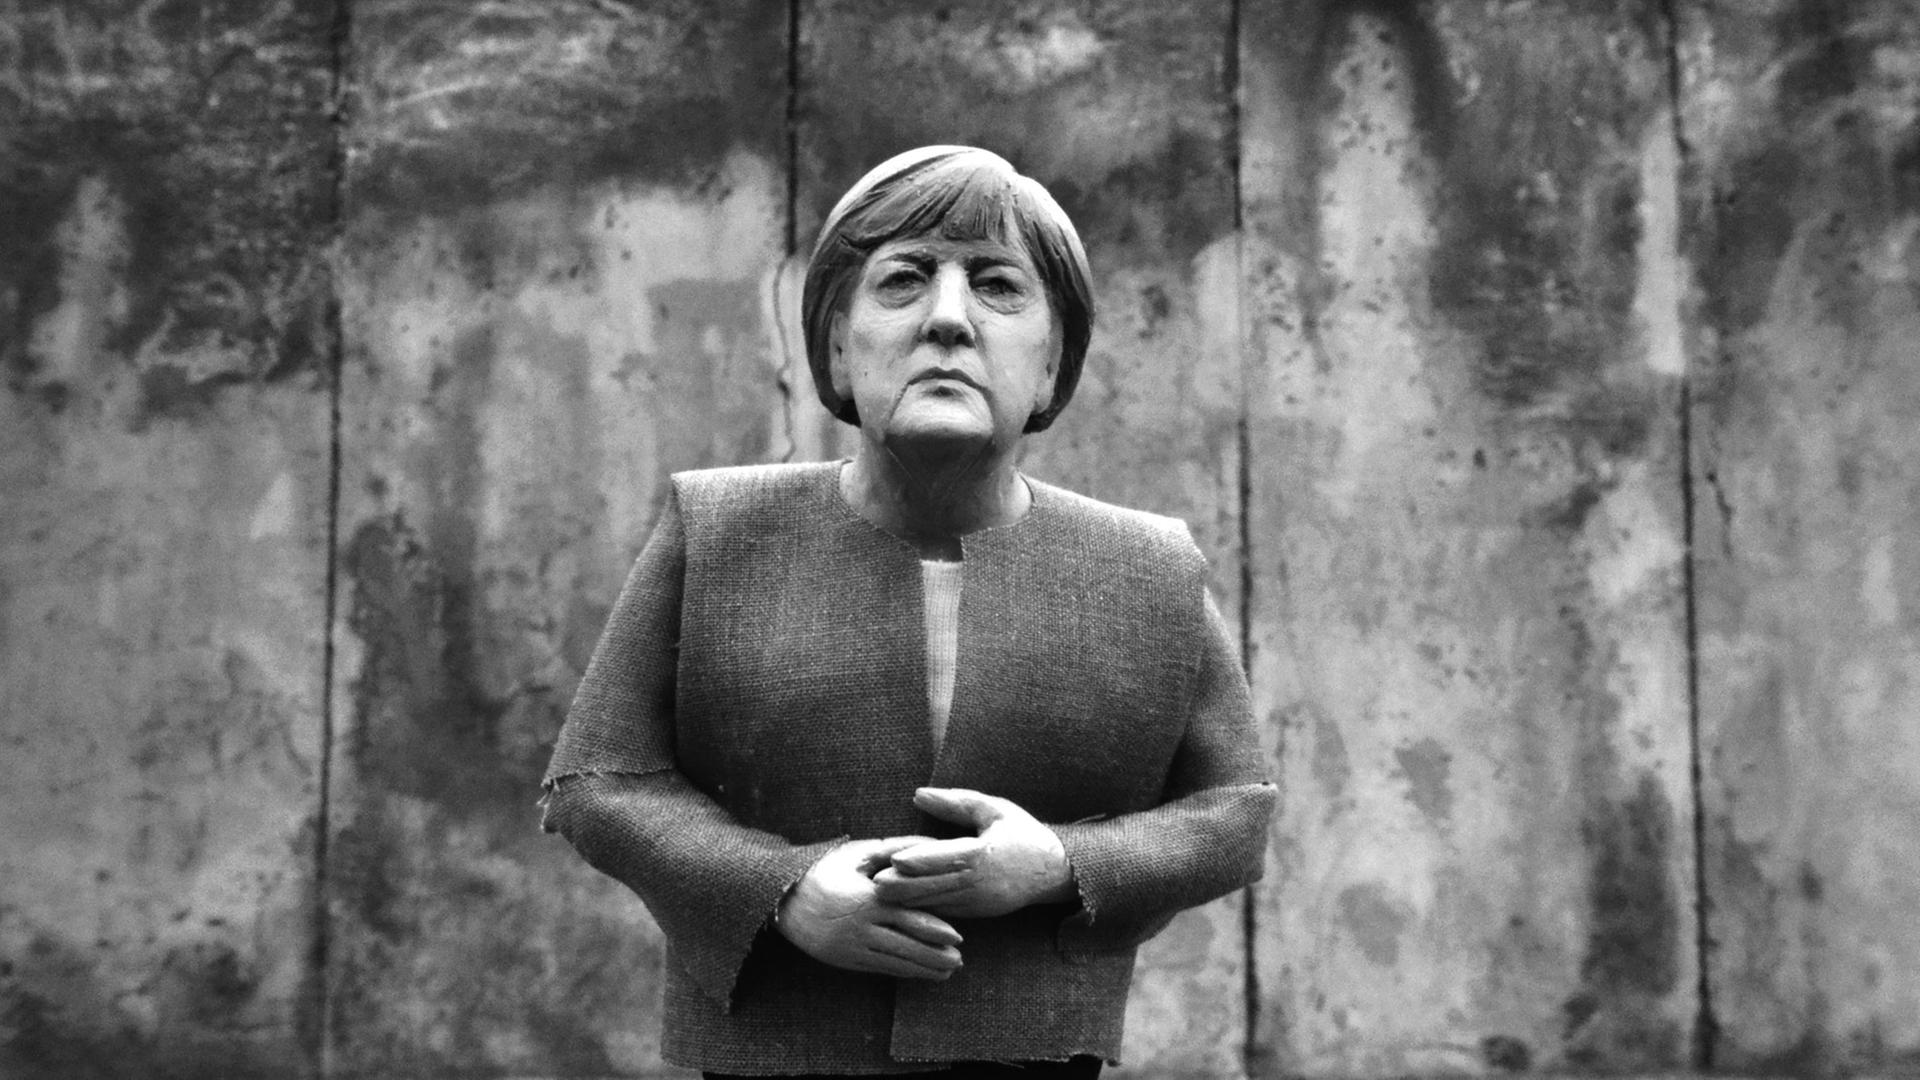 Angela Merkel aus Knetmasse von der Künstlerin "Karlotta Knetkowski". Die "Echtzeit" interviewt die Künstlerin.